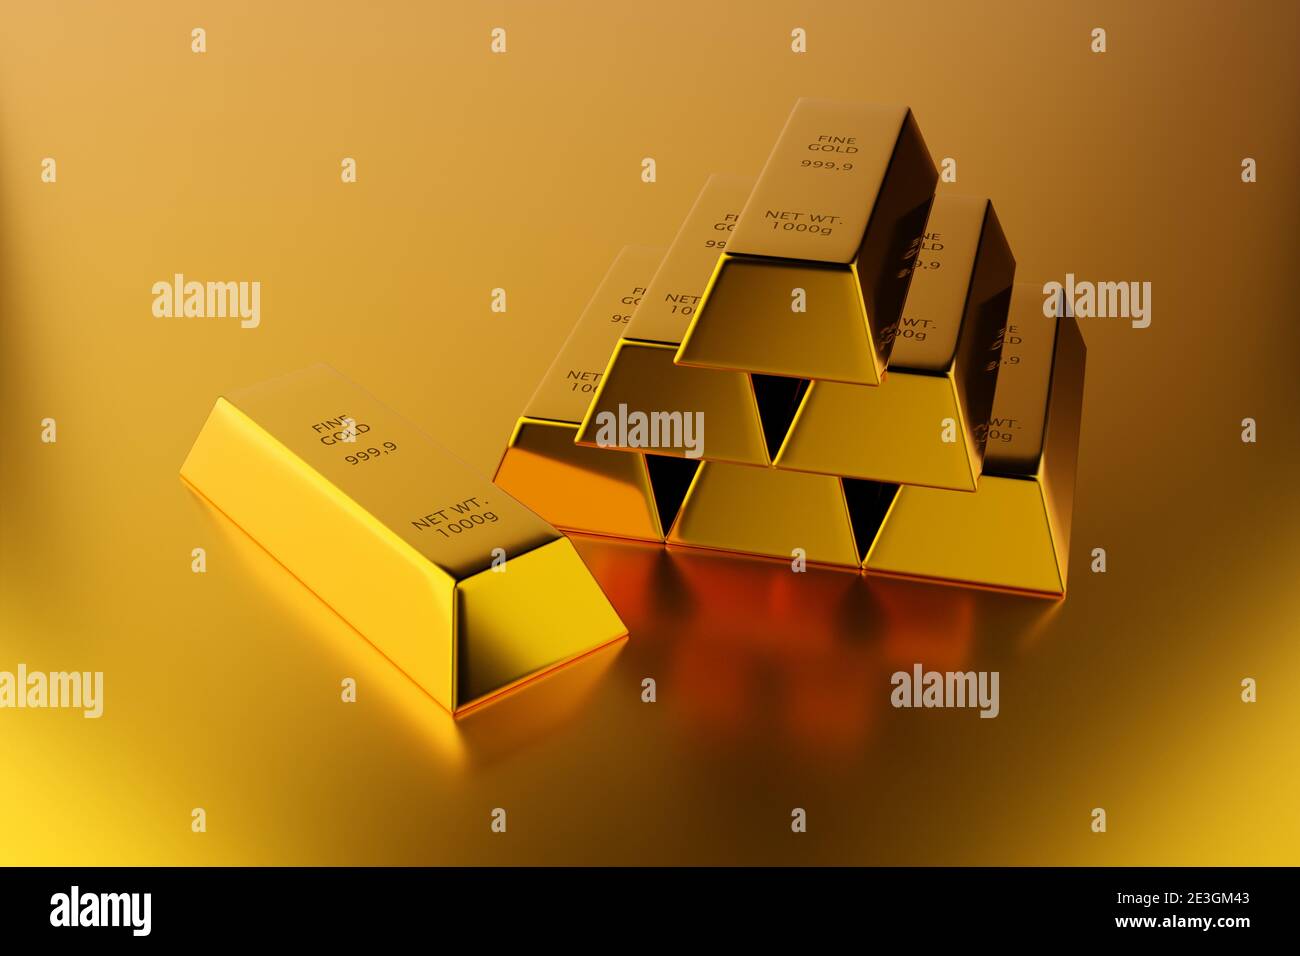 Glänzende Goldbarren oder Barren Pyramide mit einzelnen Goldbarren vorne über Goldhintergrund - Edelmetall- oder Geldinvestitionskonzept, 3D-Illustration Stockfoto